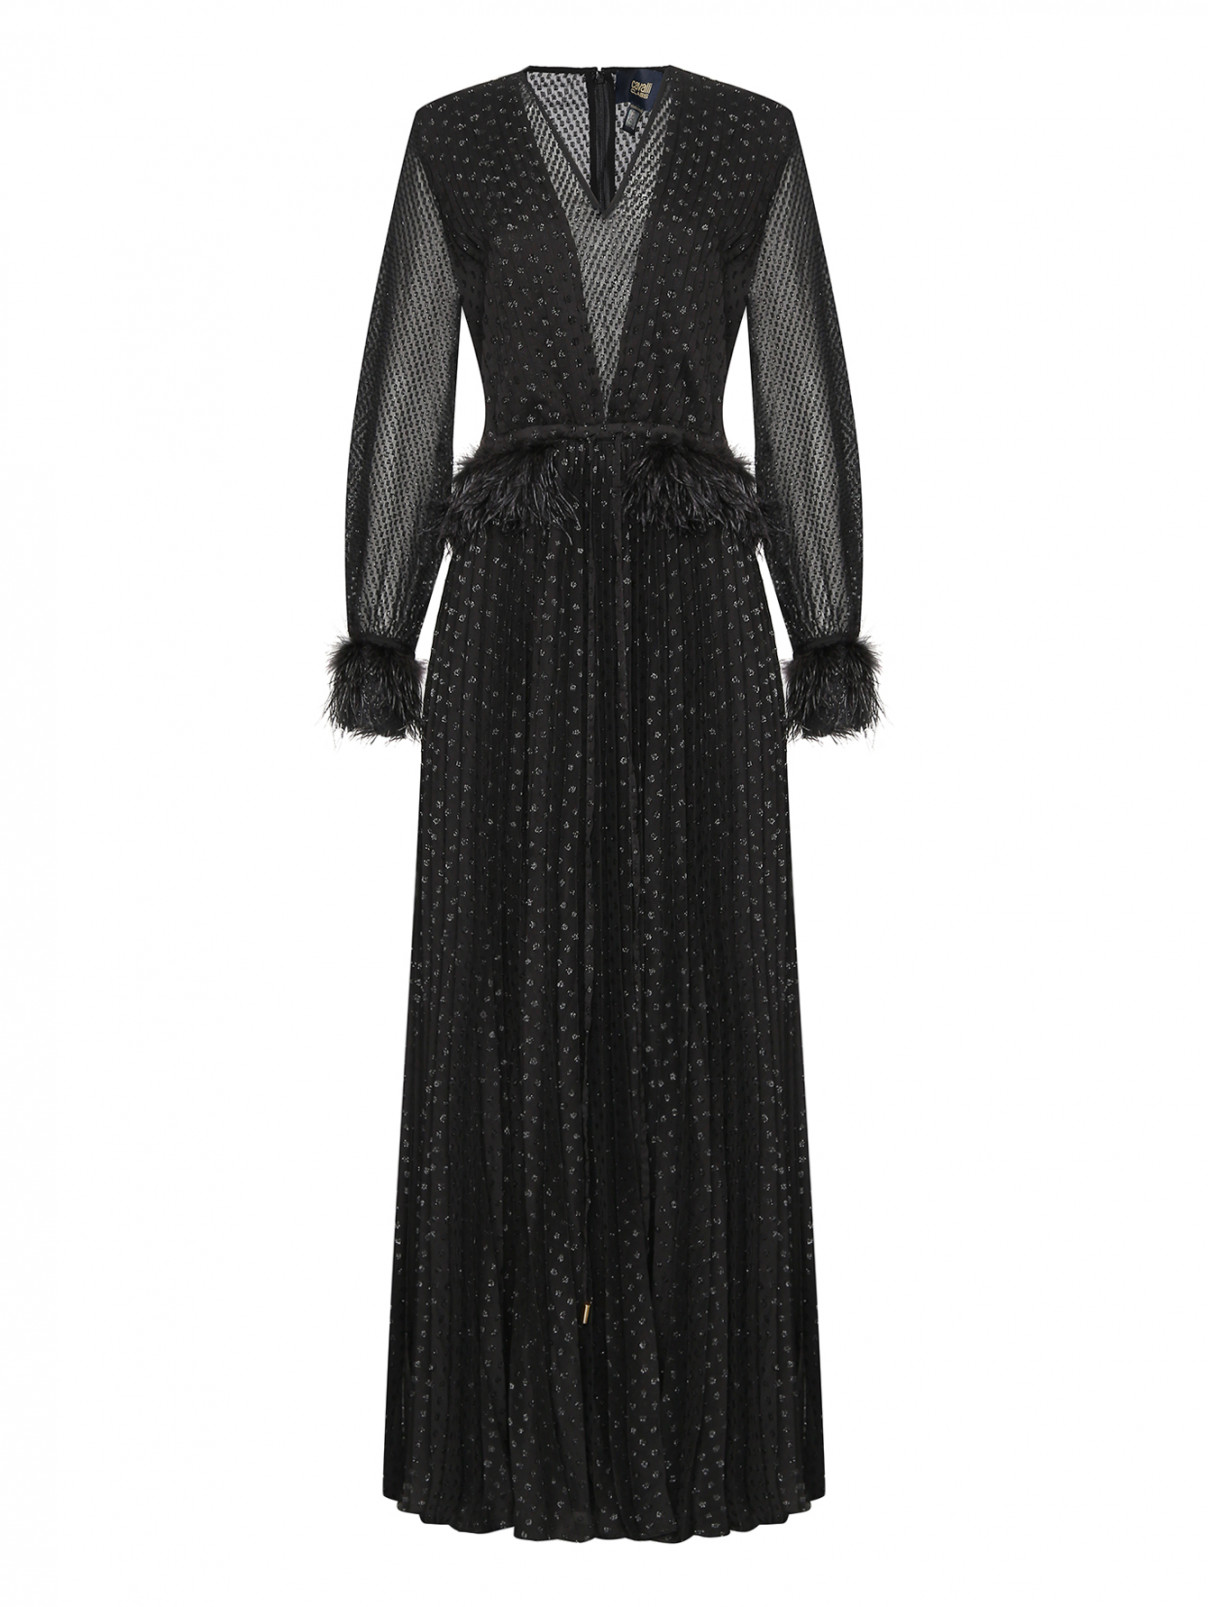 Платье-макси с декором Cavalli class  –  Общий вид  – Цвет:  Черный